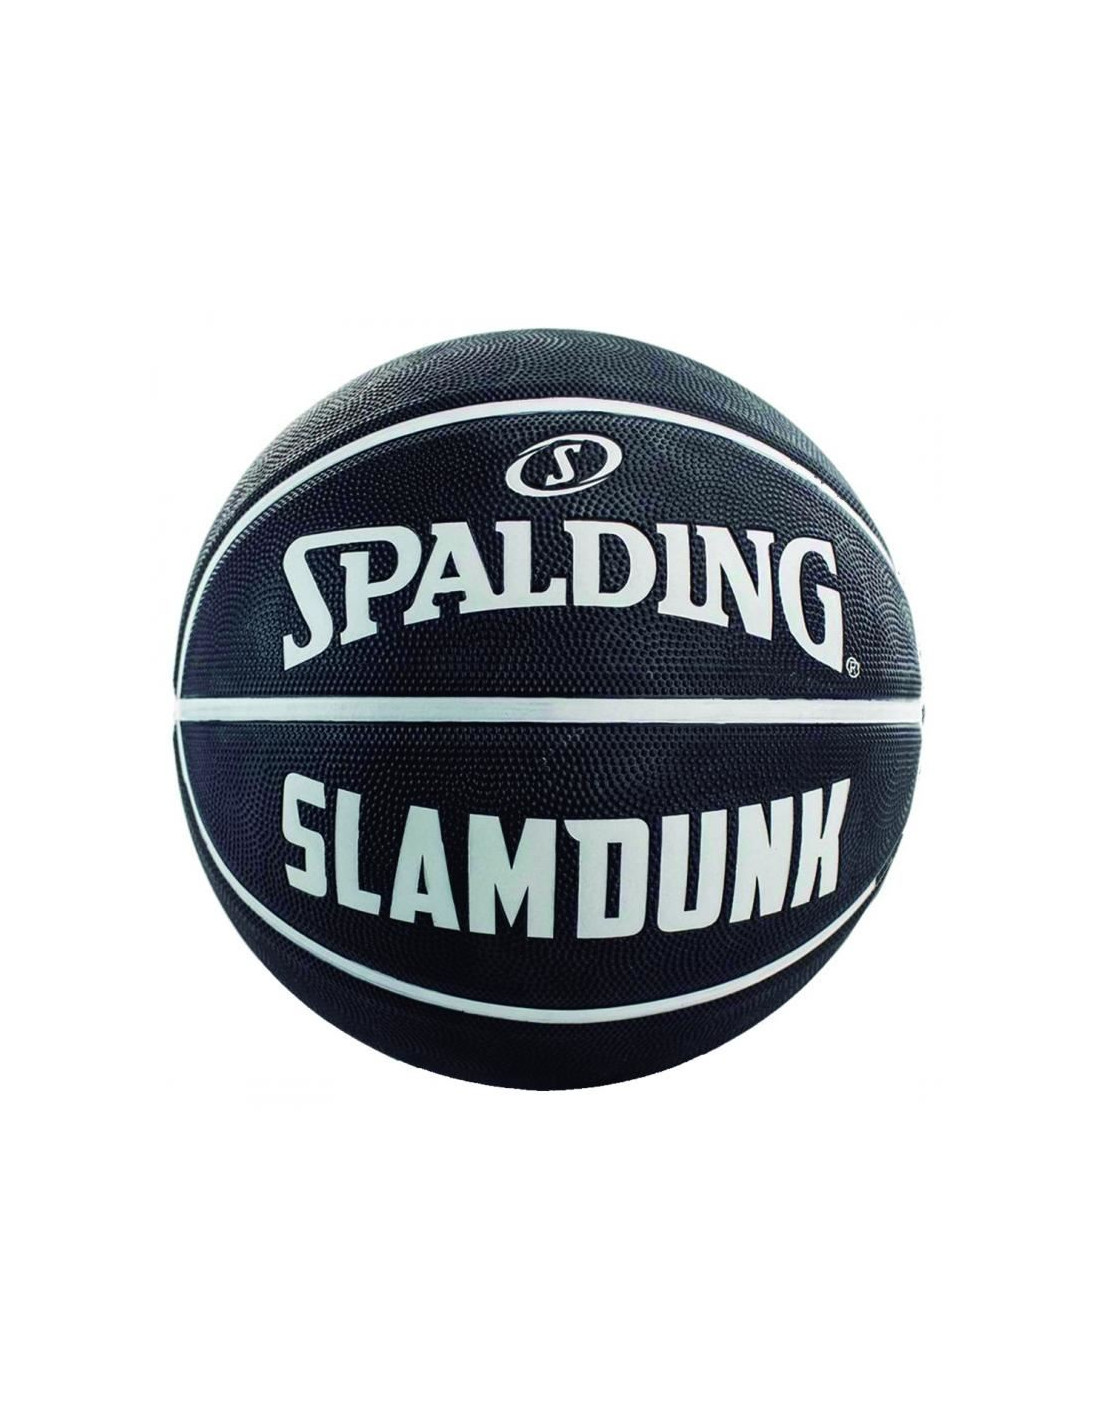 Bola de Basquete Spalding - Slam dunk